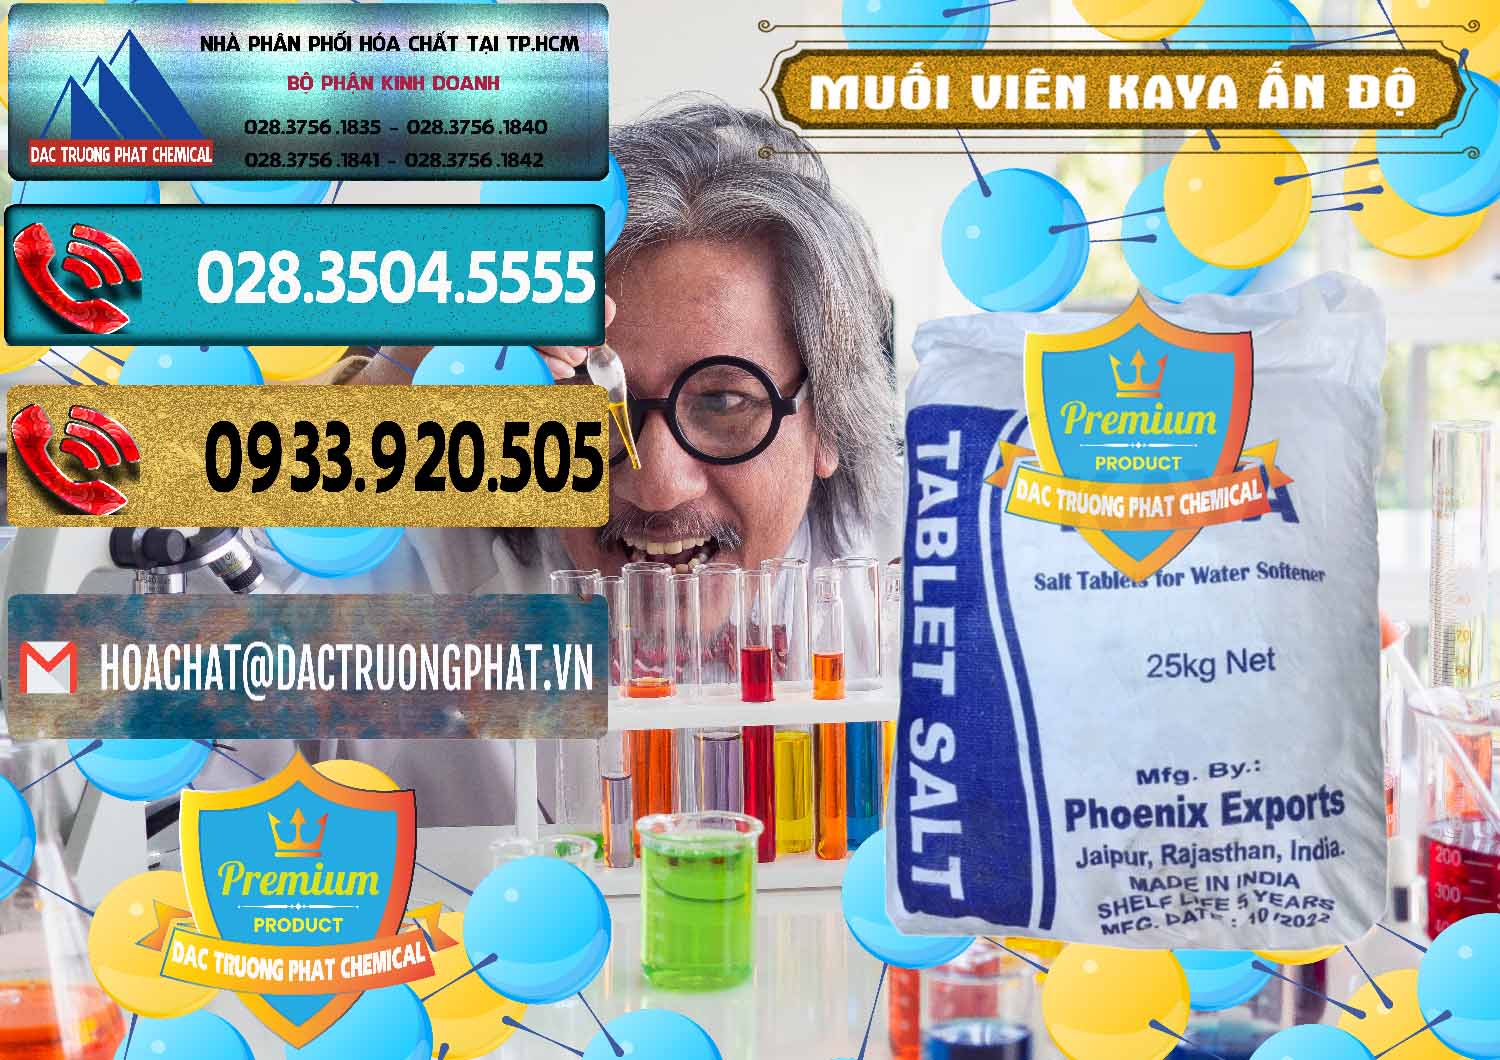 Nhà nhập khẩu & bán Muối NaCL – Sodium Chloride Dạng Viên Tablets Kaya Ấn Độ India - 0368 - Cty phân phối ( kinh doanh ) hóa chất tại TP.HCM - hoachatdetnhuom.com